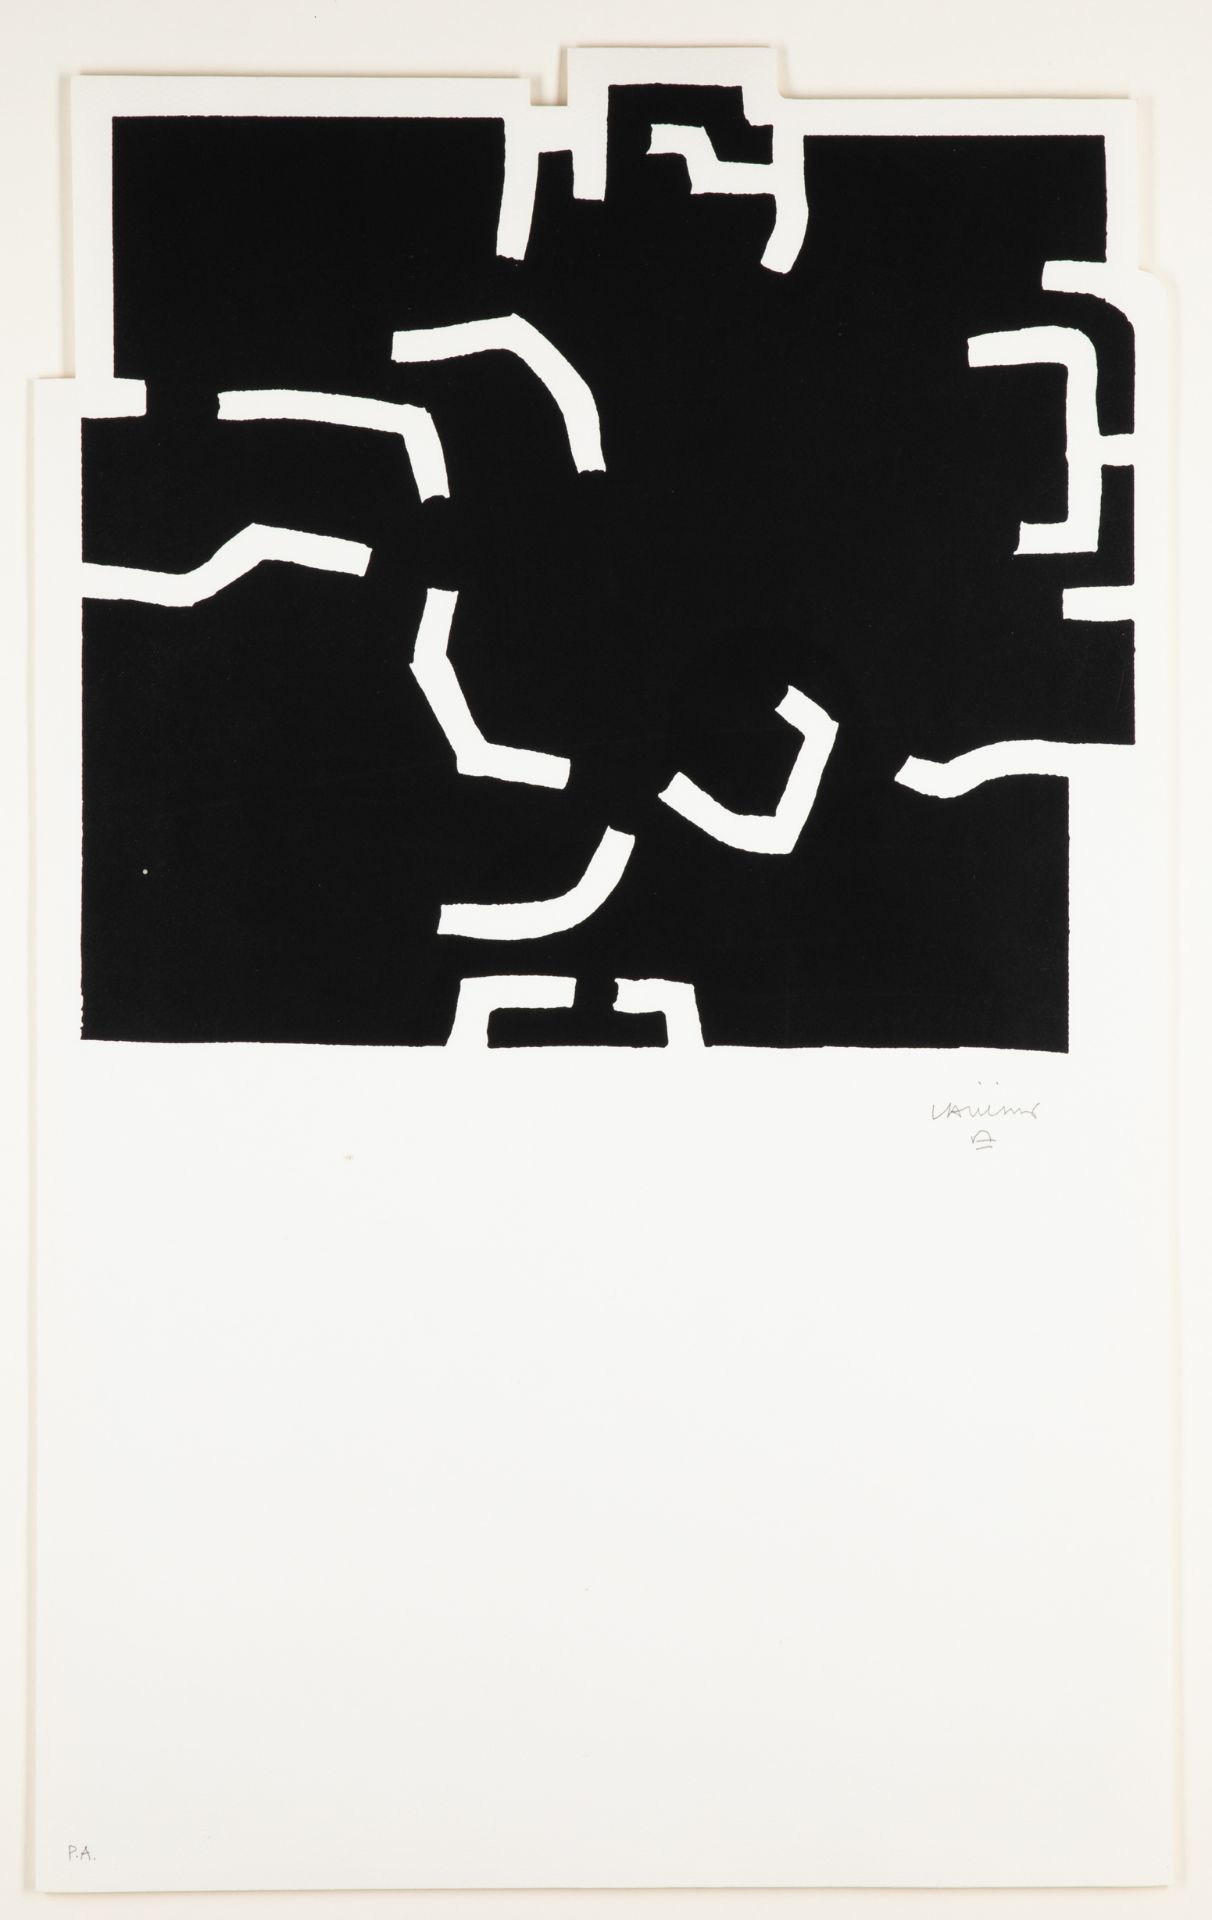 Eduardo Chillida*, Zürich I, 1978